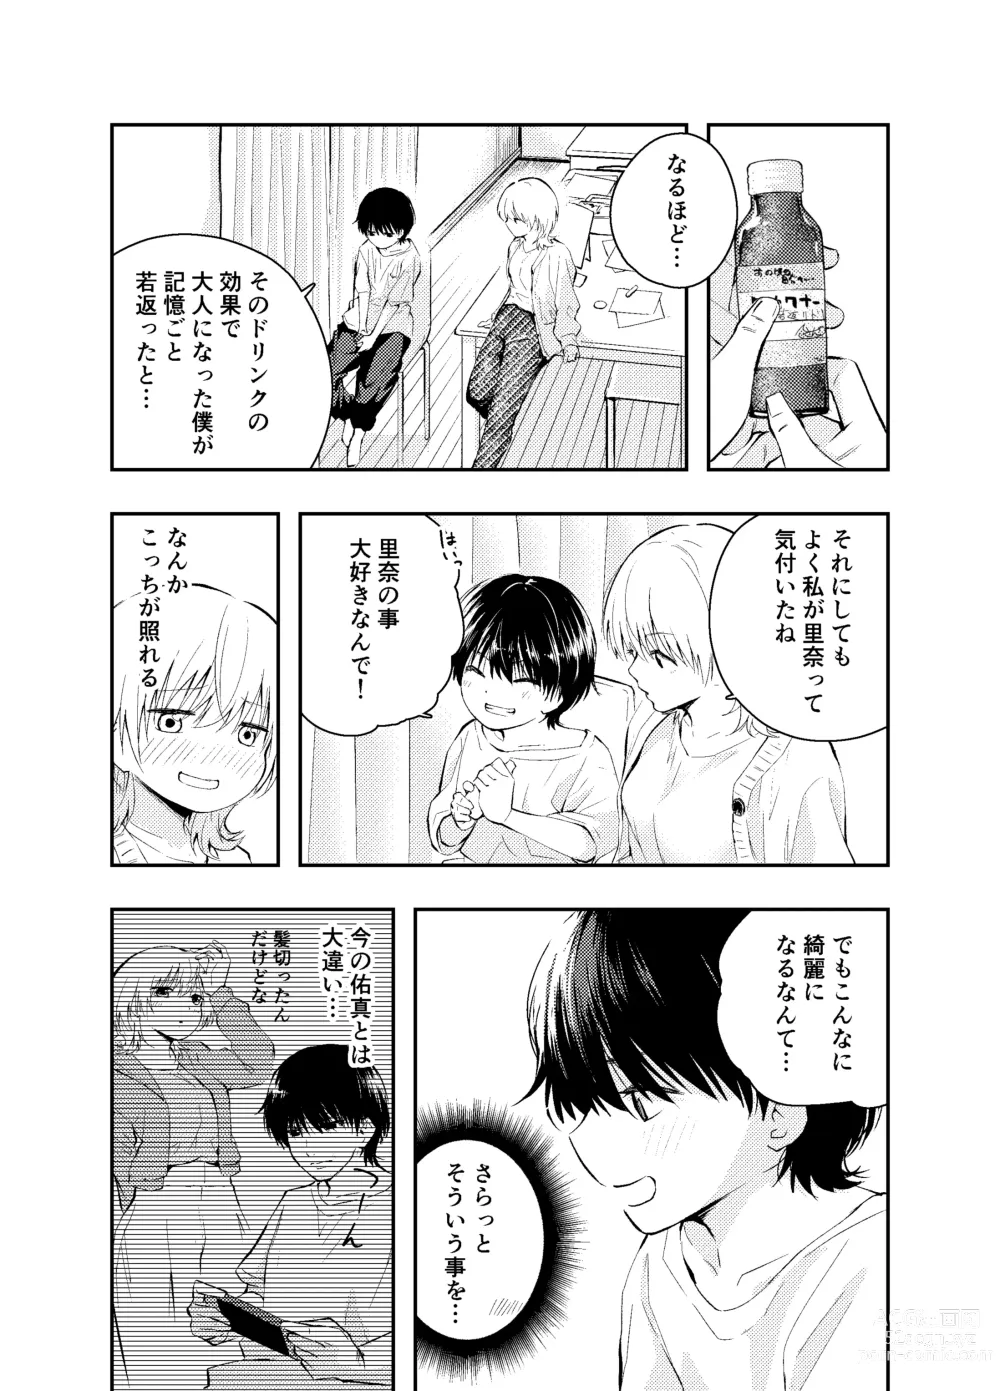 Page 7 of doujinshi Mukashi no Sugata ni Modotta Otto to no Sex wa Uwaki desu ka?